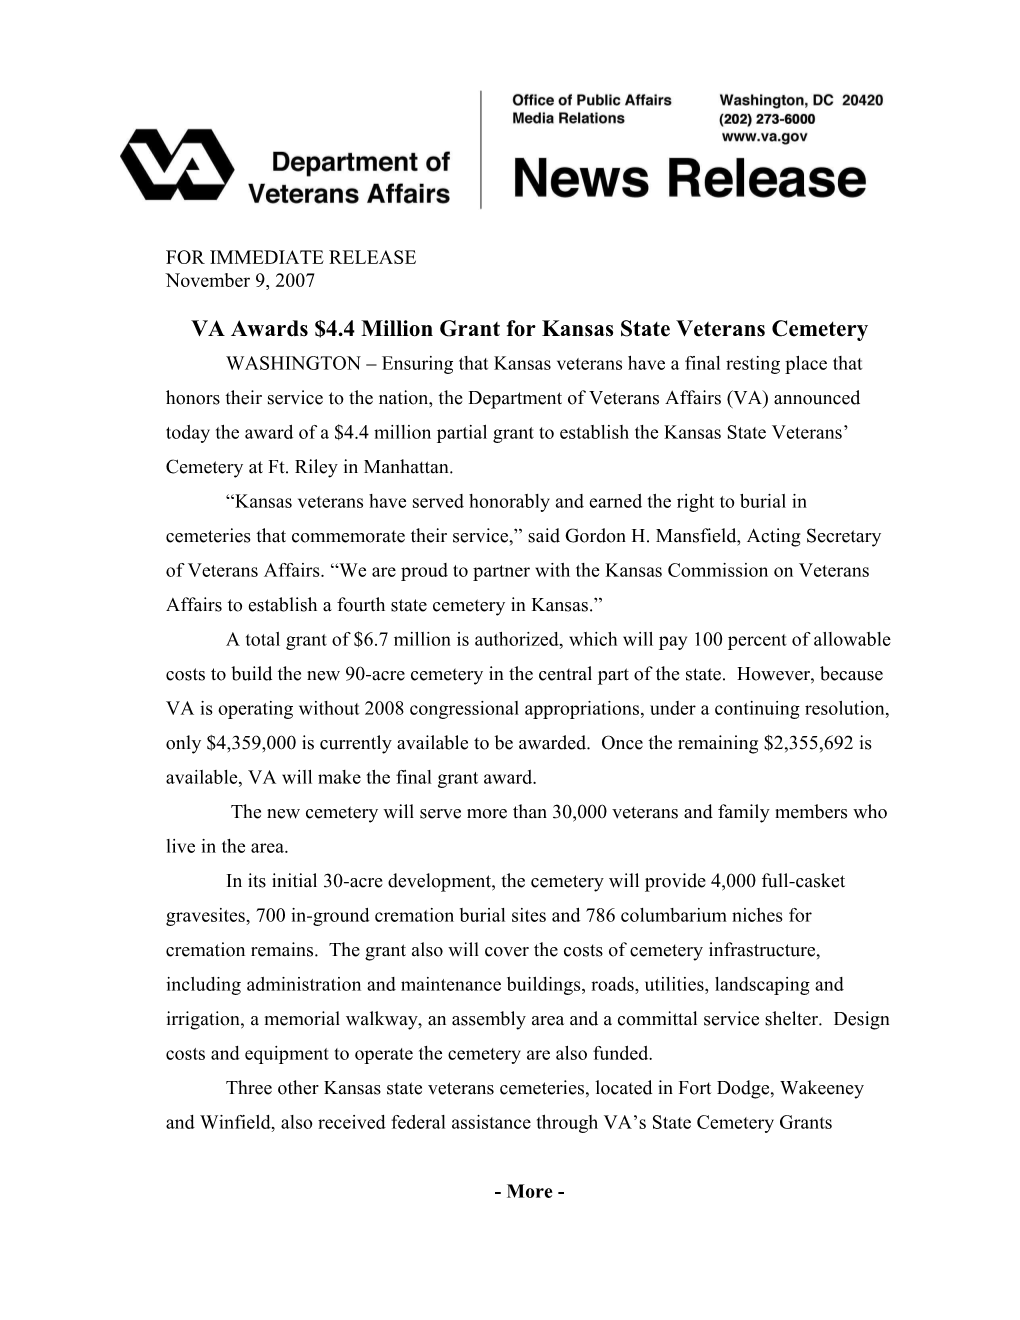 VA Awards $4.4 Million Grant for Kansas State Veterans Cemetery